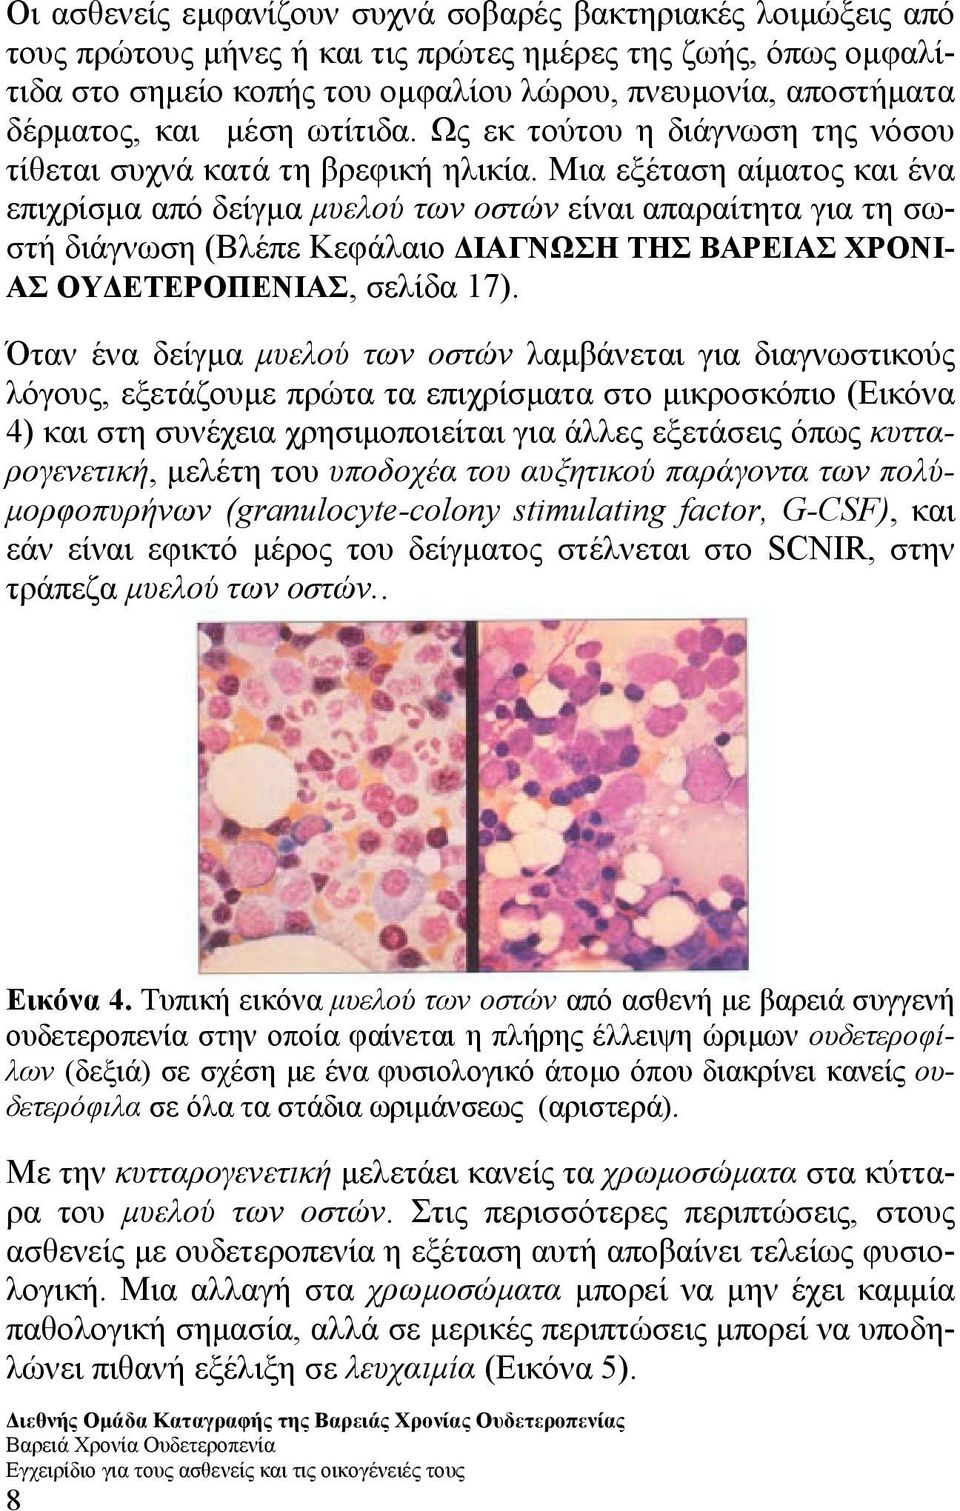 Μια εξέταση αίµατος και ένα επιχρίσµα από δείγµα µυελού των οστών είναι απαραίτητα για τη σωστή διάγνωση (Βλέπε Κεφάλαιο ΙΑΓΝΩΣΗ ΤΗΣ ΒΑΡΕΙΑΣ ΧΡΟΝΙ- ΑΣ ΟΥ ΕΤΕΡΟΠΕΝΙΑΣ, σελίδα 17).